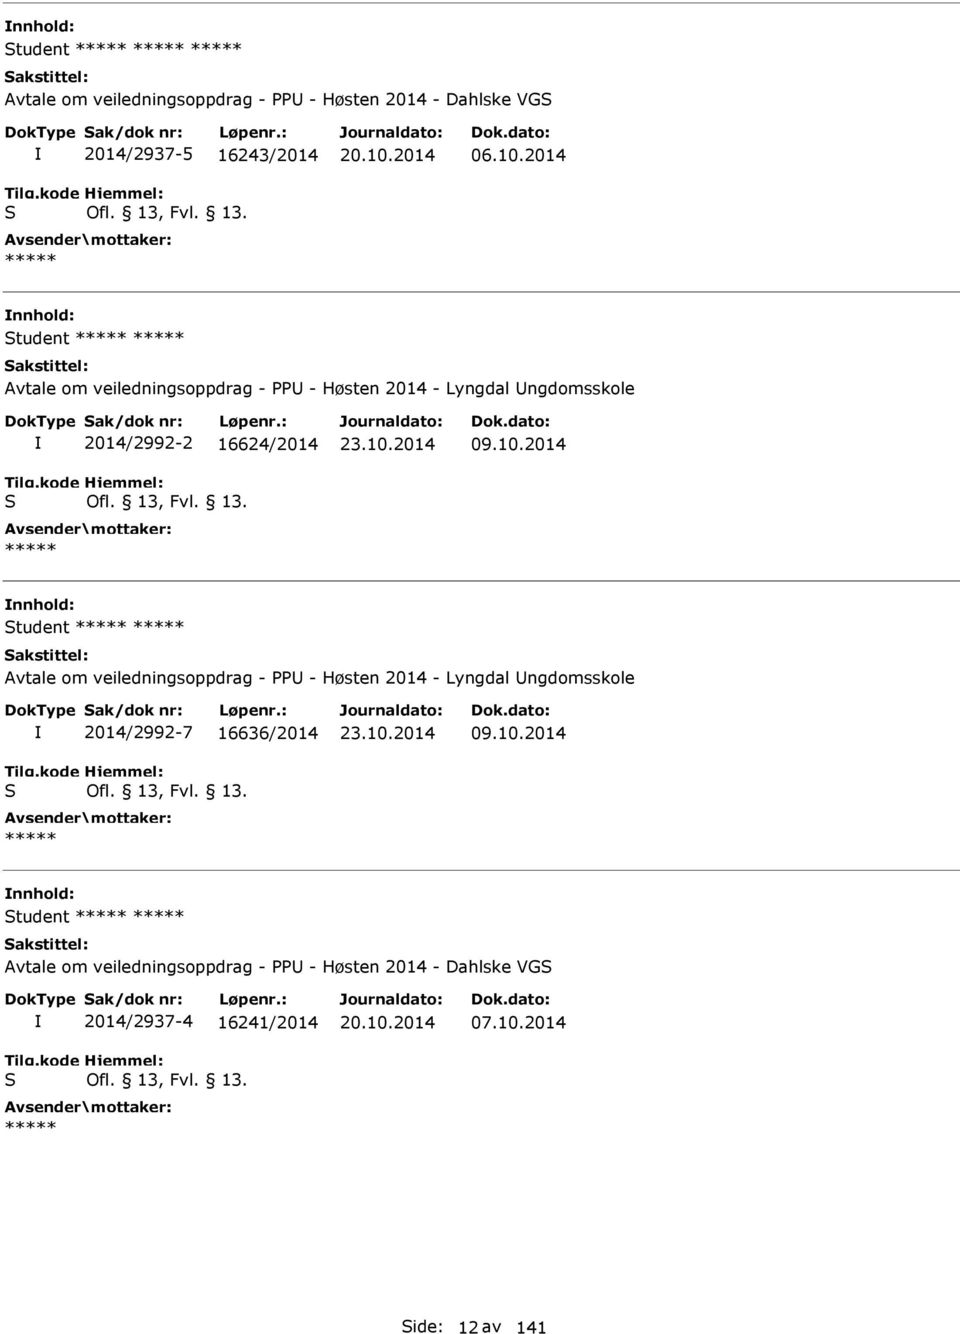 10.2014 Student ***** ***** Avtale om veiledningsoppdrag - PPU - Høsten 2014 - Lyngdal Ungdomsskole S 2014/2992-7 16636/2014 Ofl. 13, Fvl. 13. ***** 23.10.2014 09.